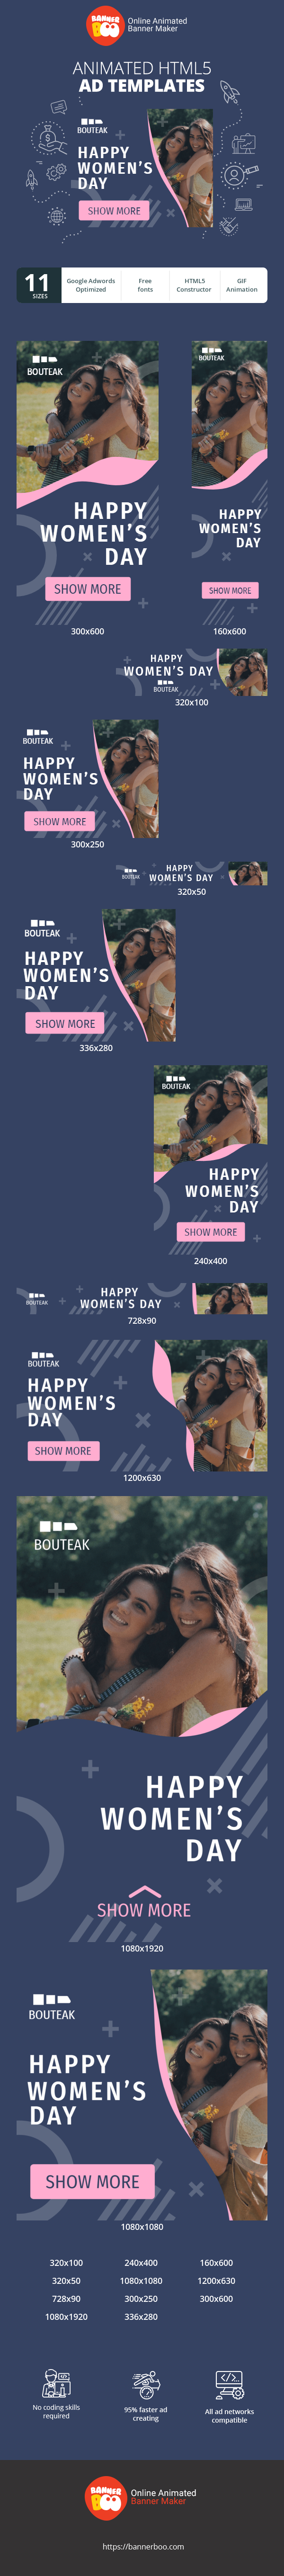 Szablon reklamy banerowej — Happy Womens Day — 8 March